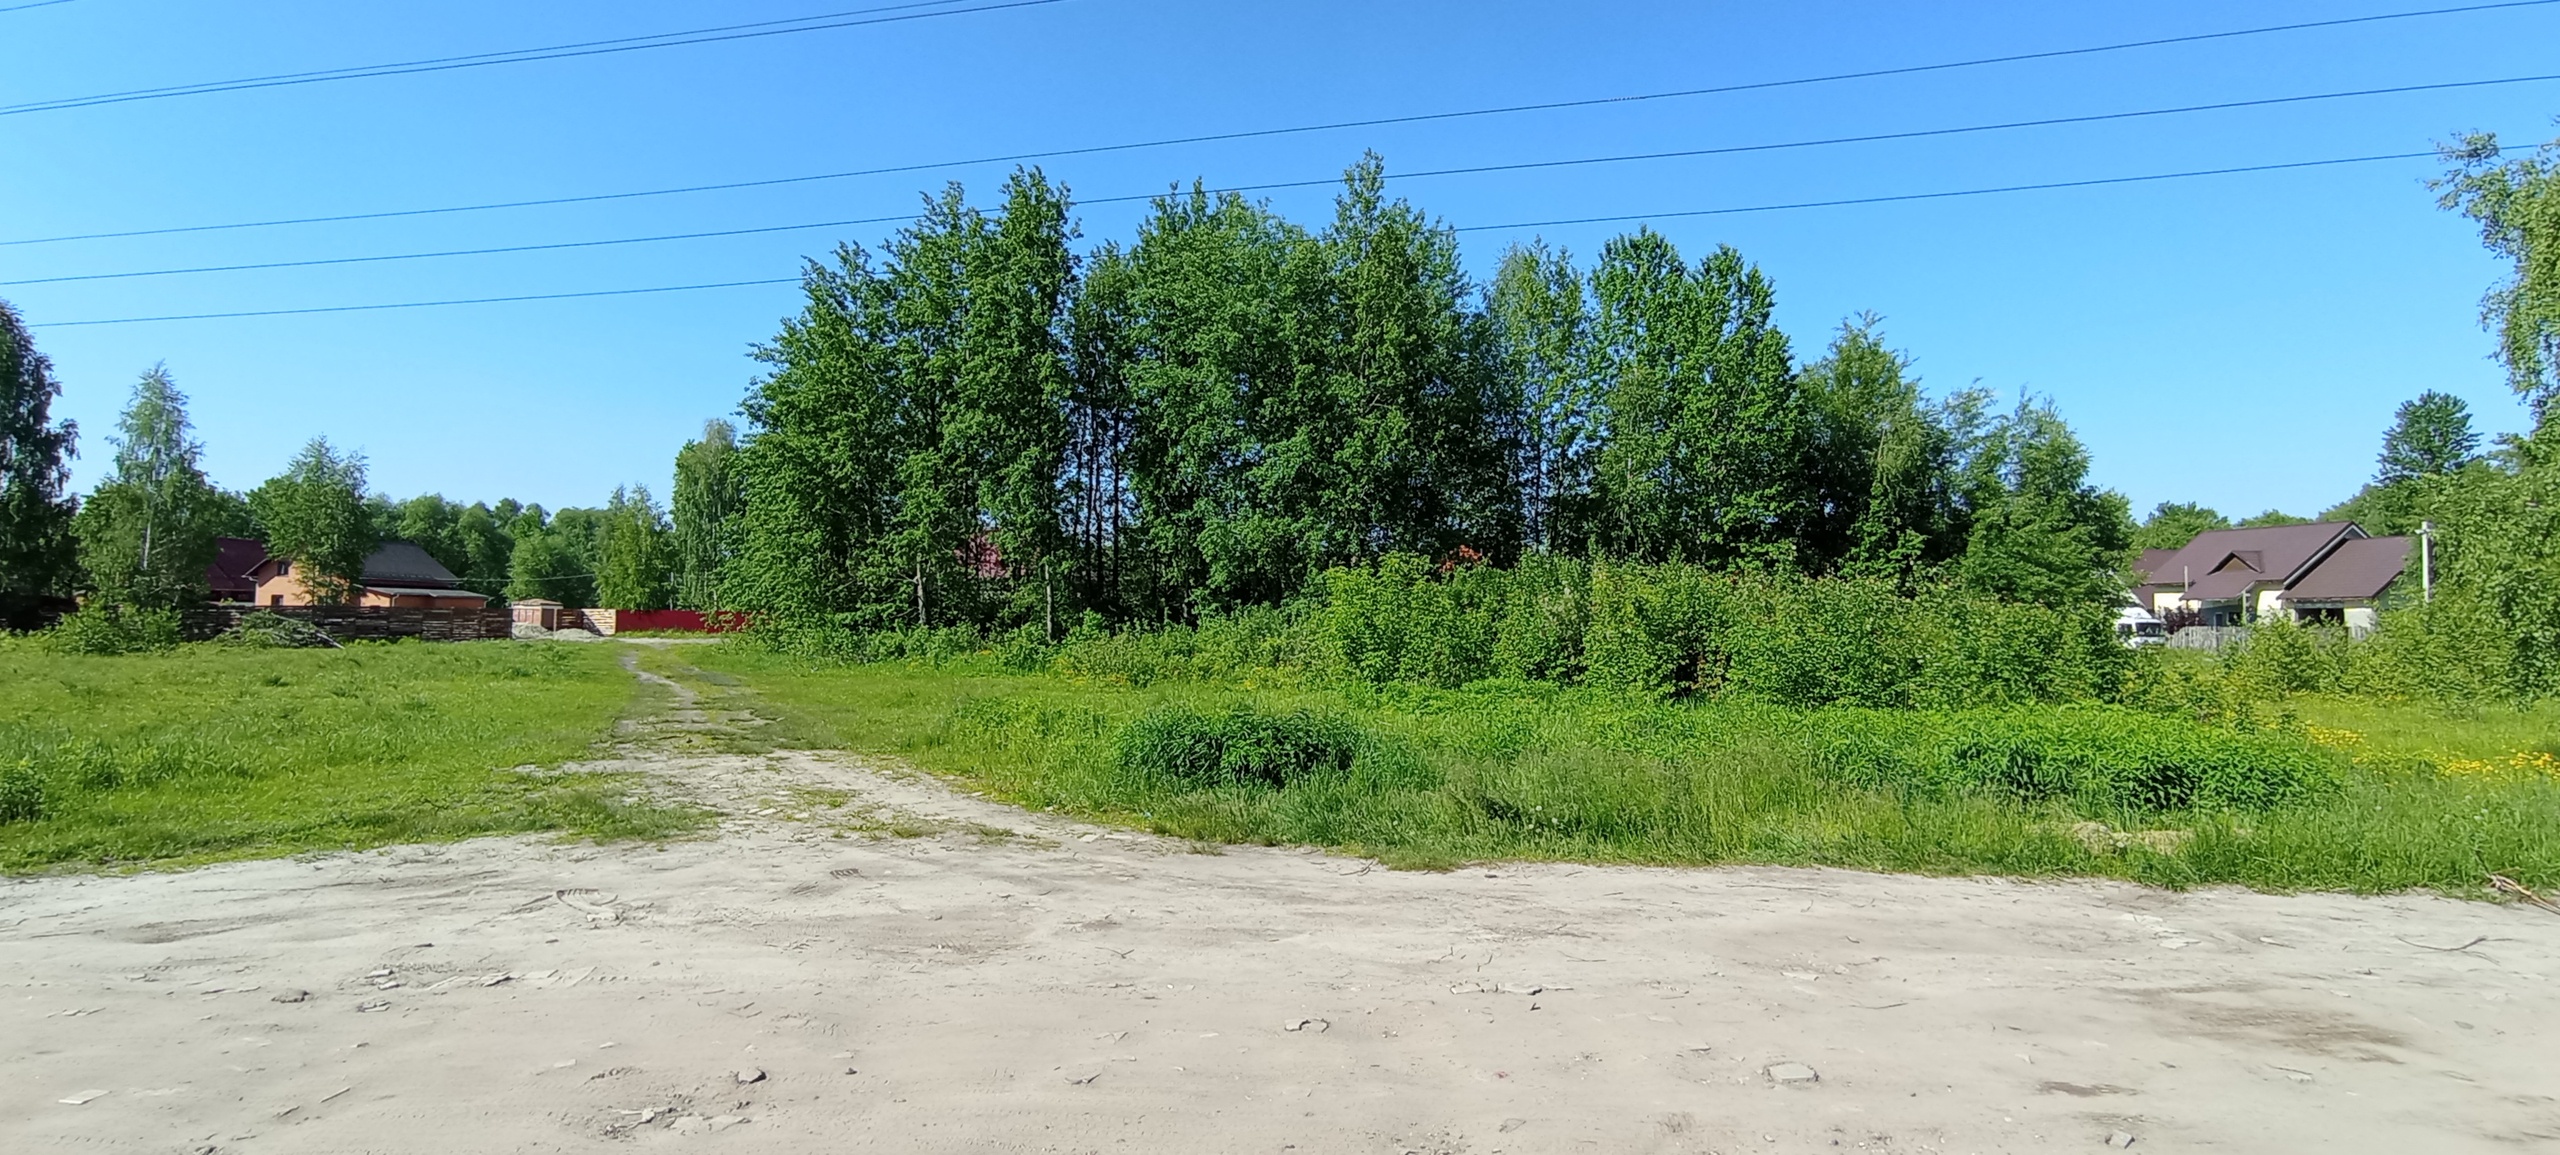 Жители Володарского района Брянска попросили вернуть им футбольное поле